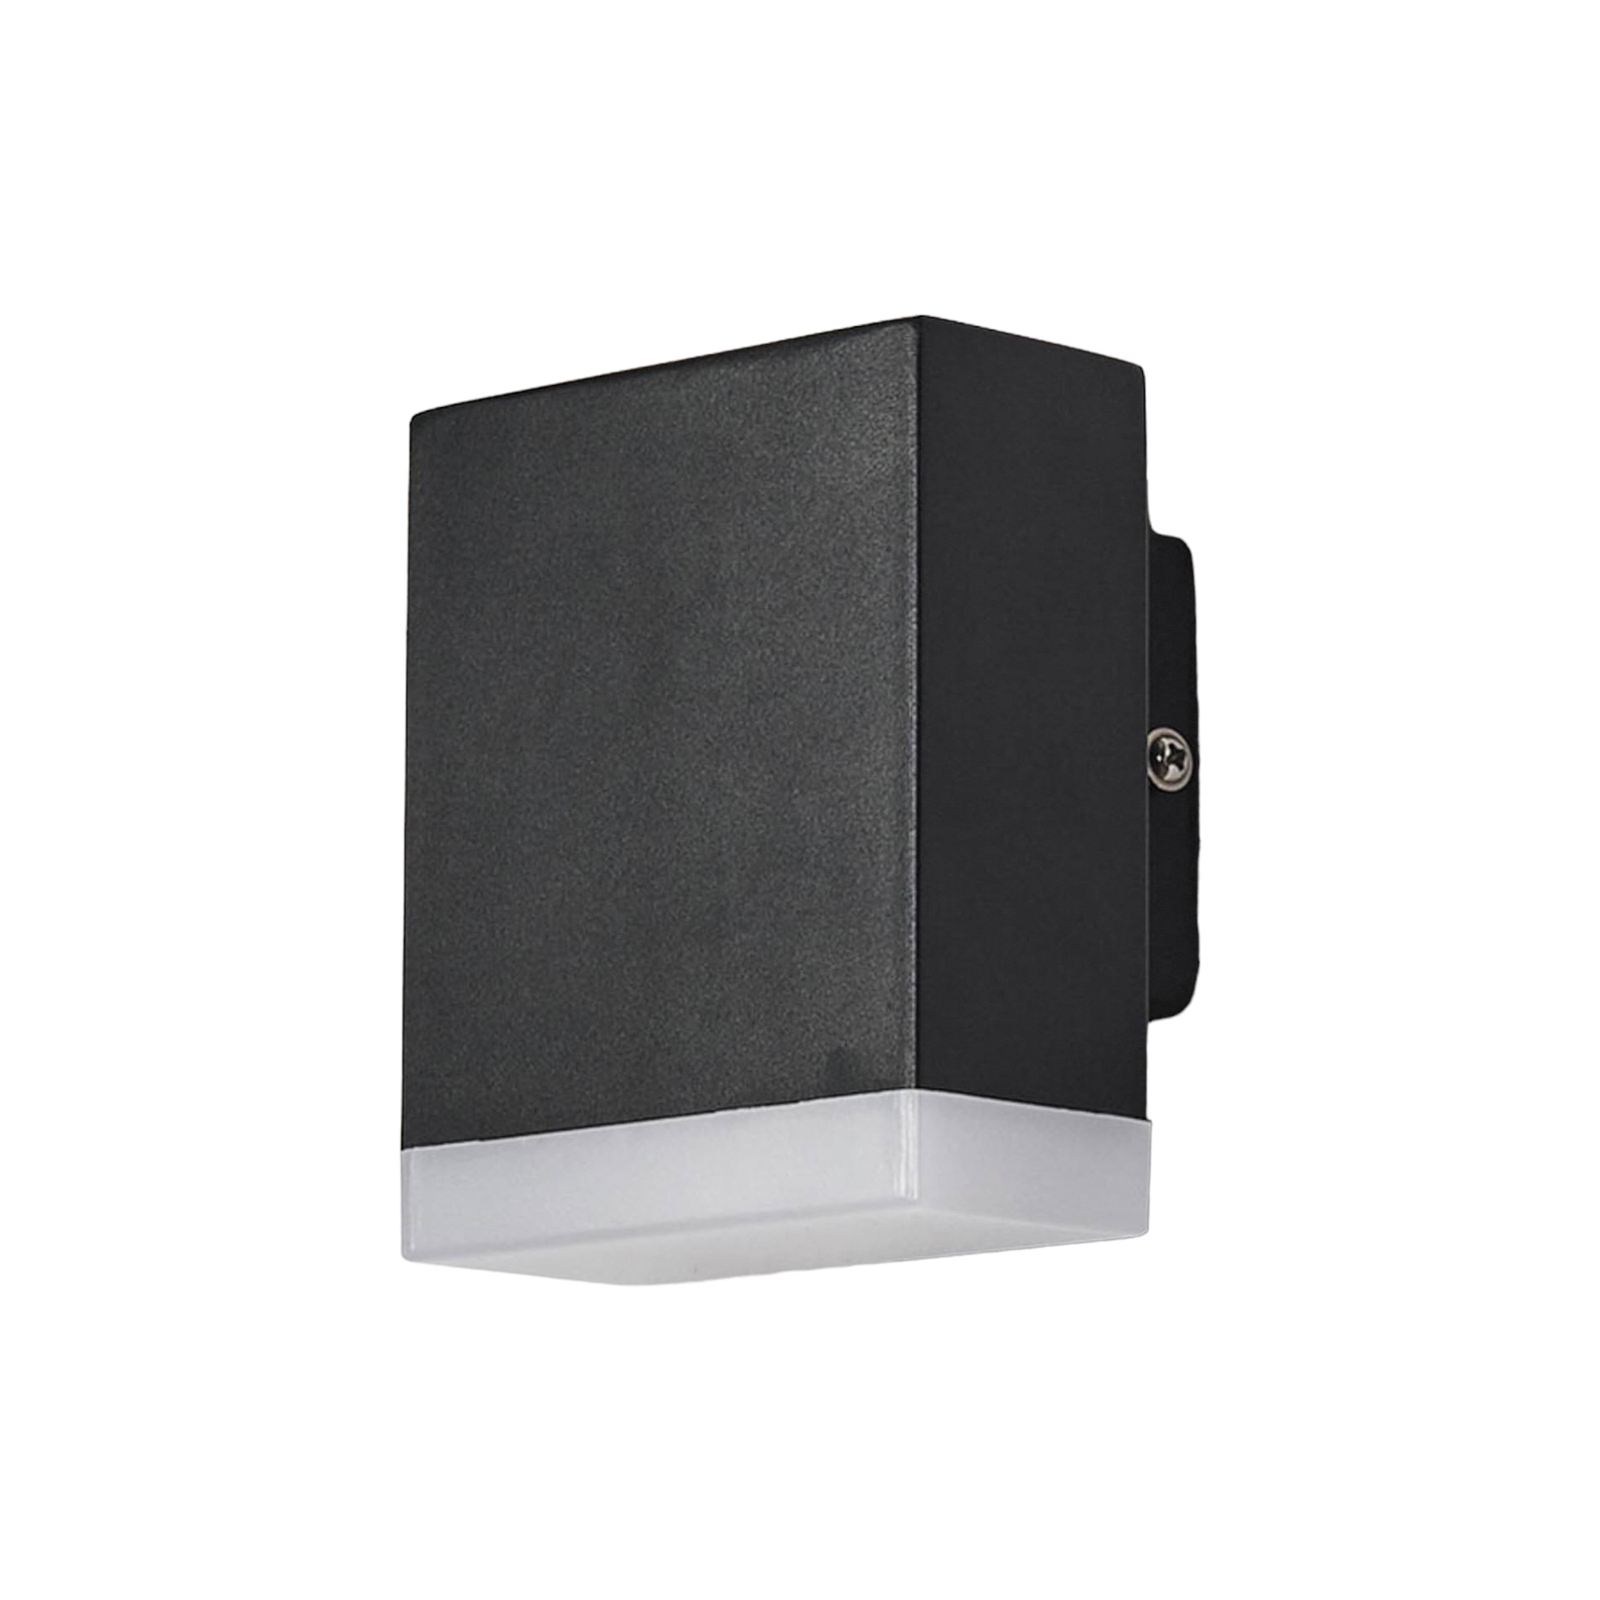 Moderne LED-vegglampe for utendørsbruk Aya i svart